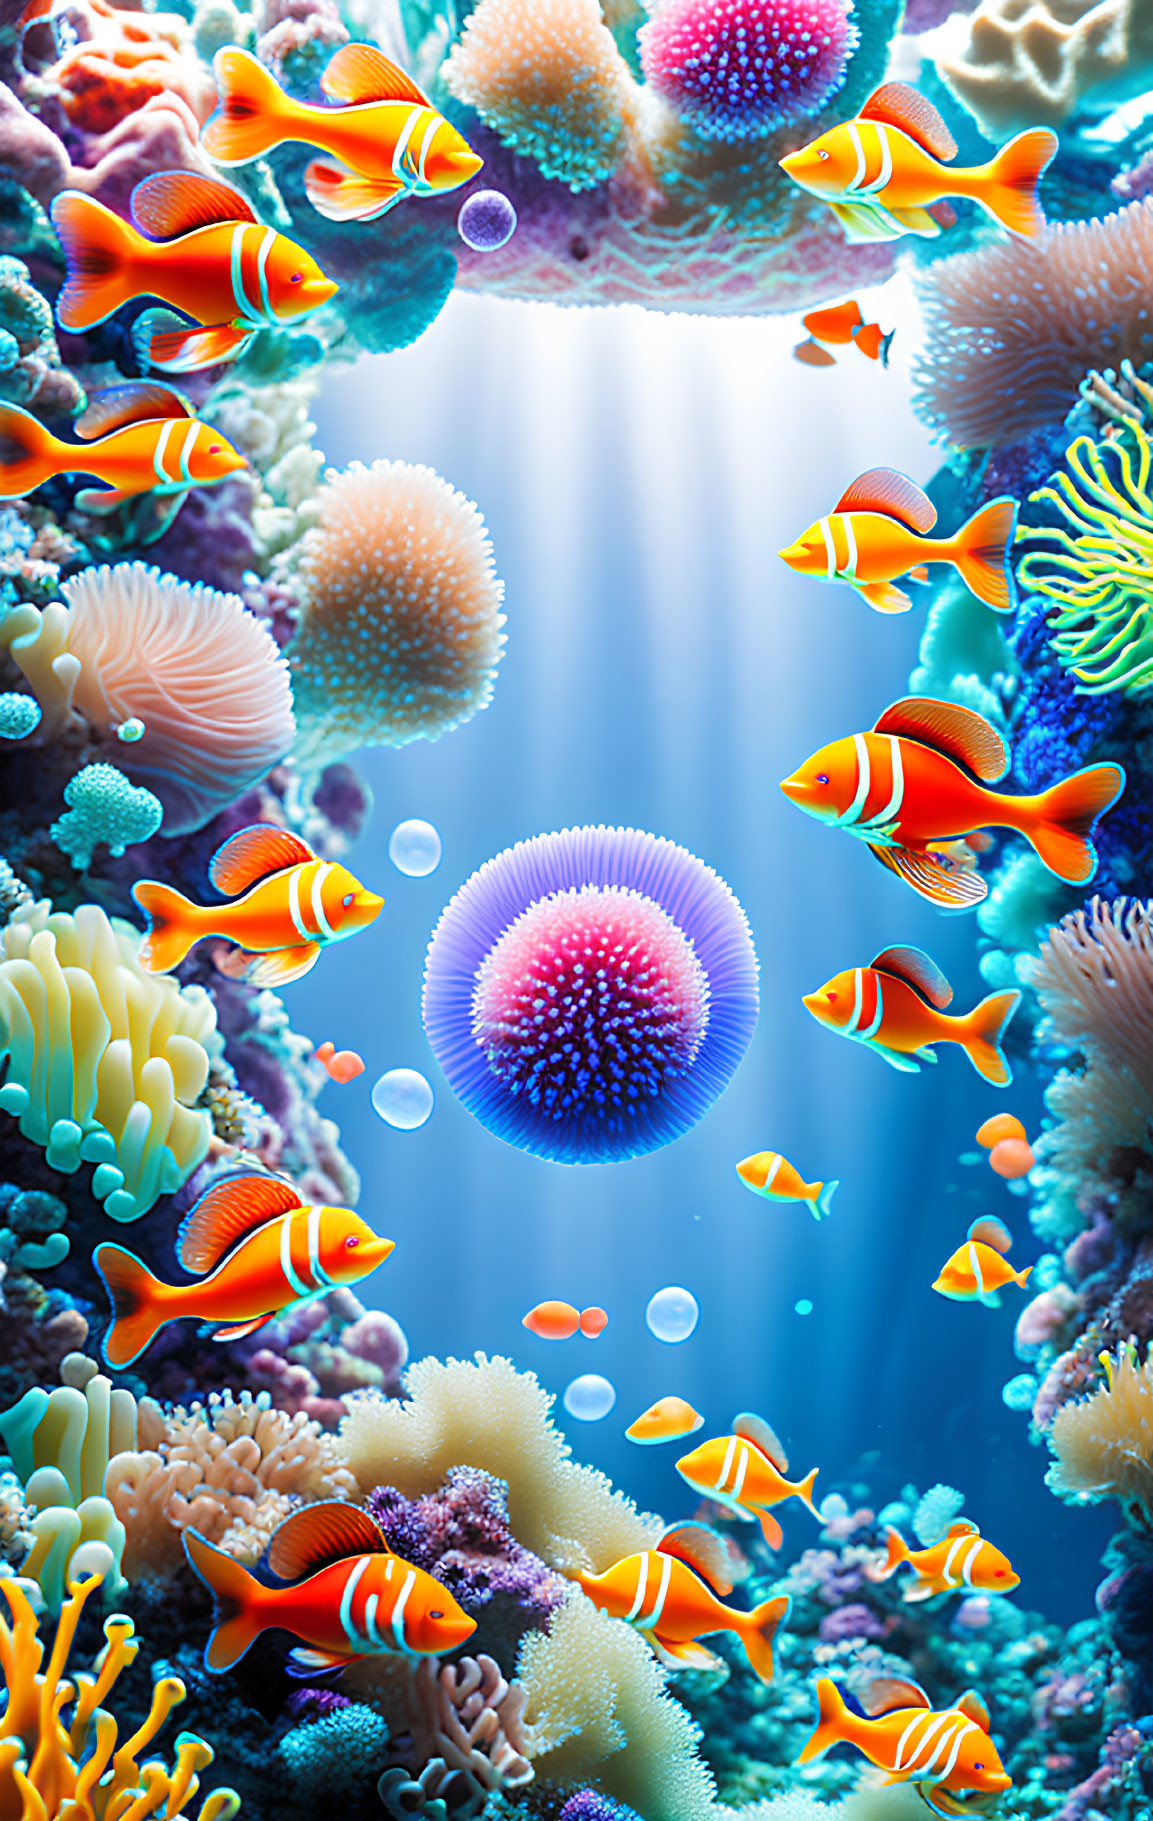 Colorful Clownfish Swimming in Vibrant Underwater Scene